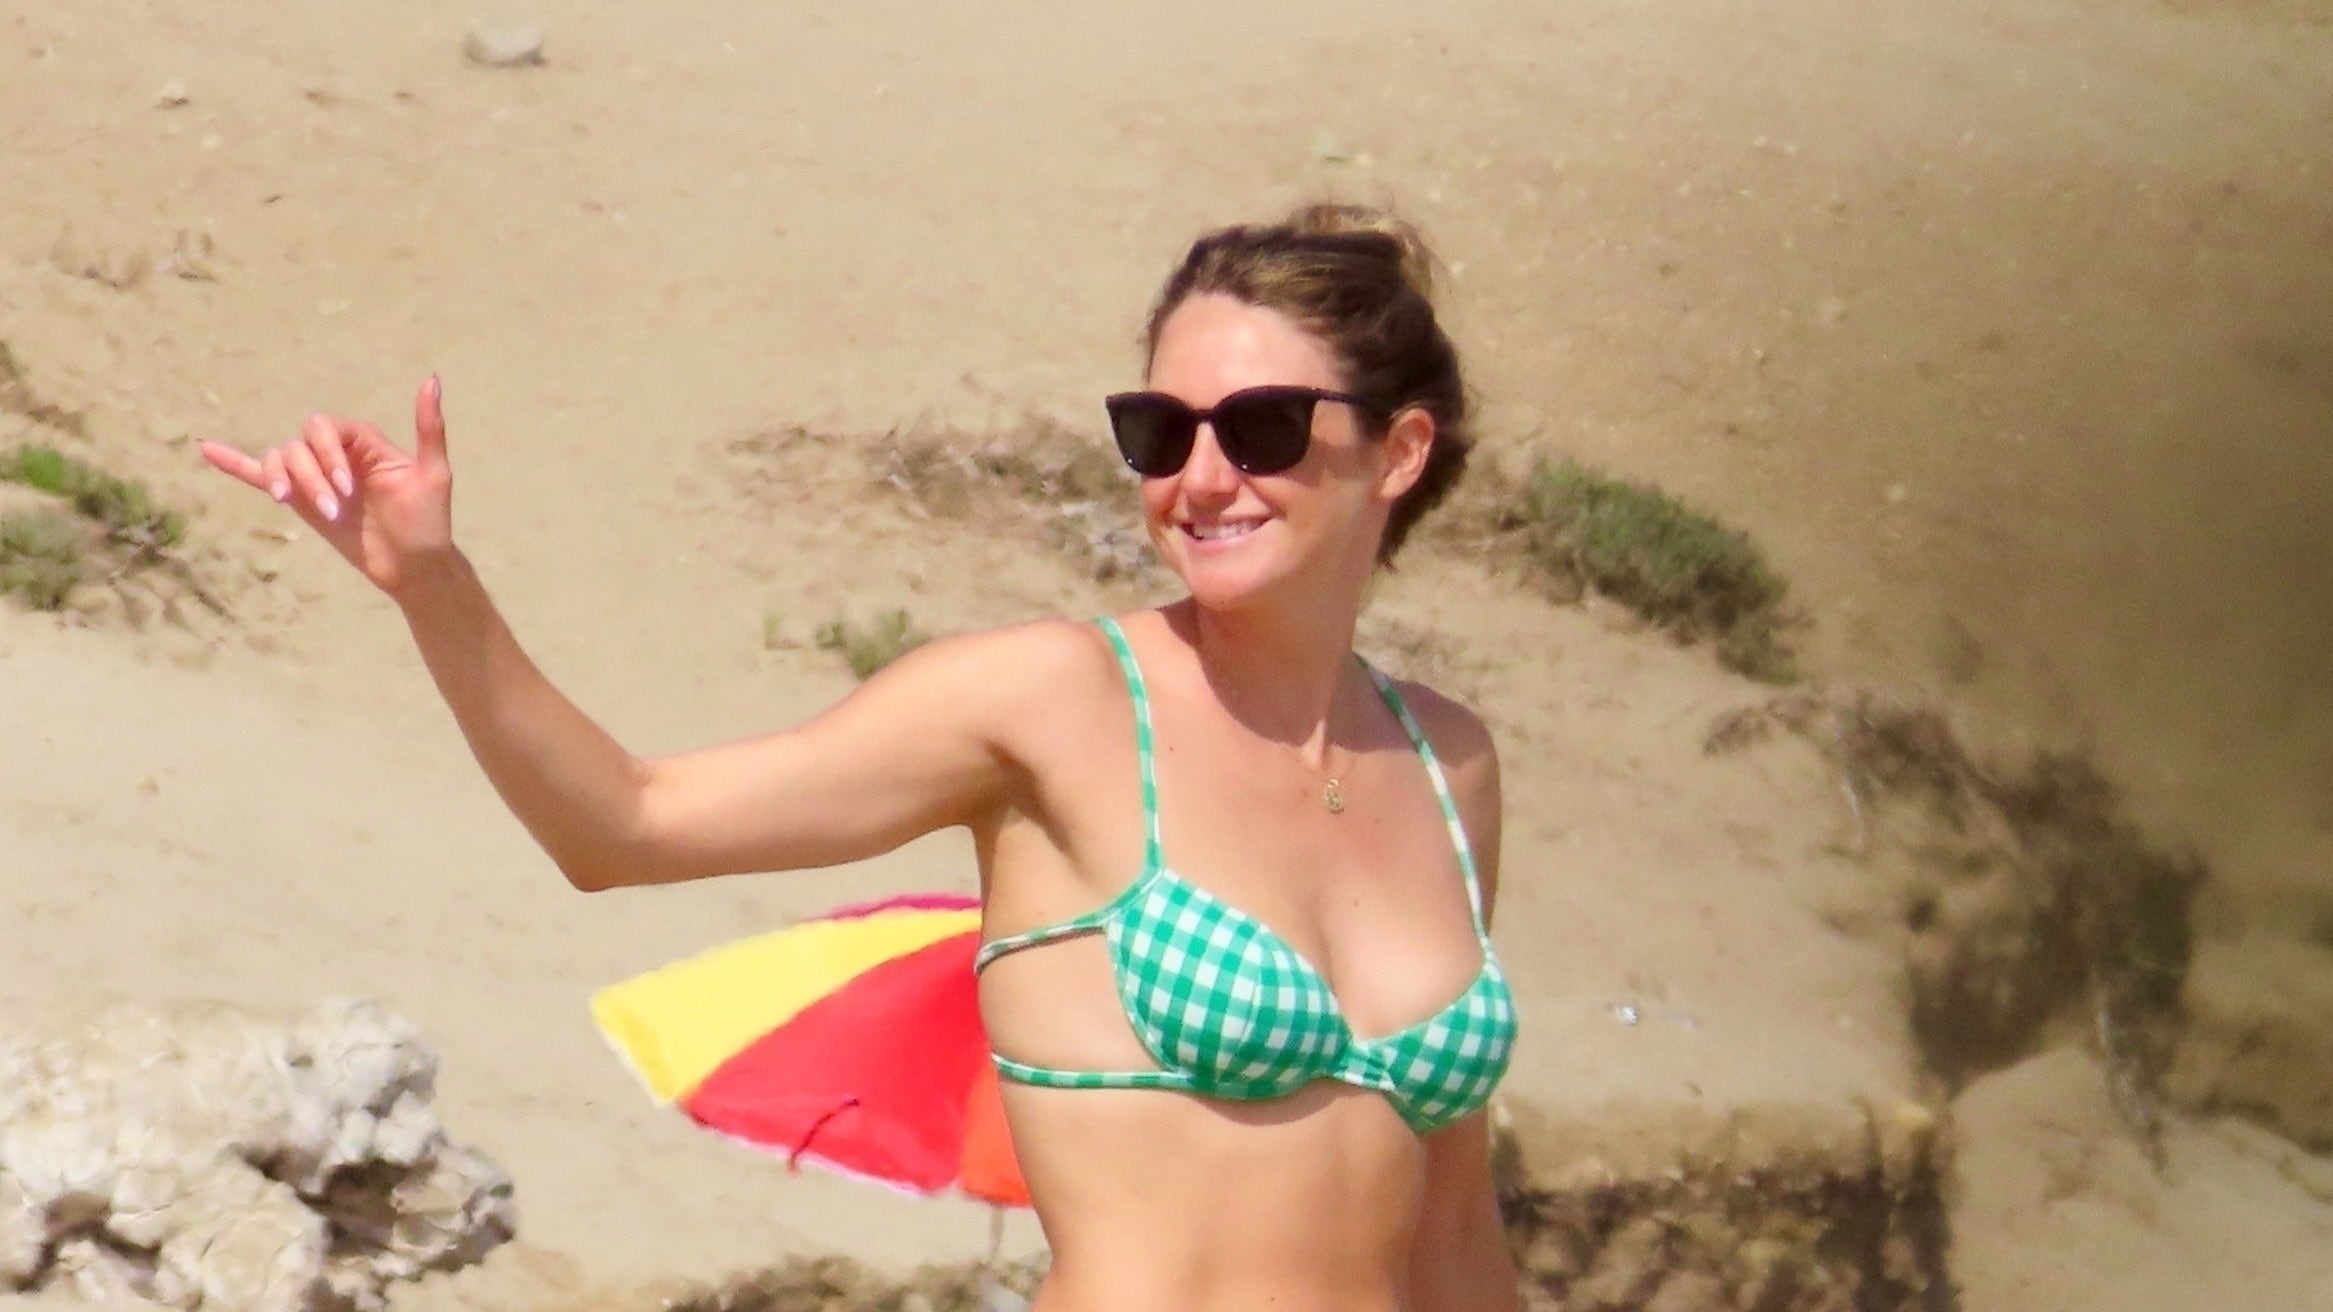 Shailene Woodley enjoys beach day in green-checkered bikini